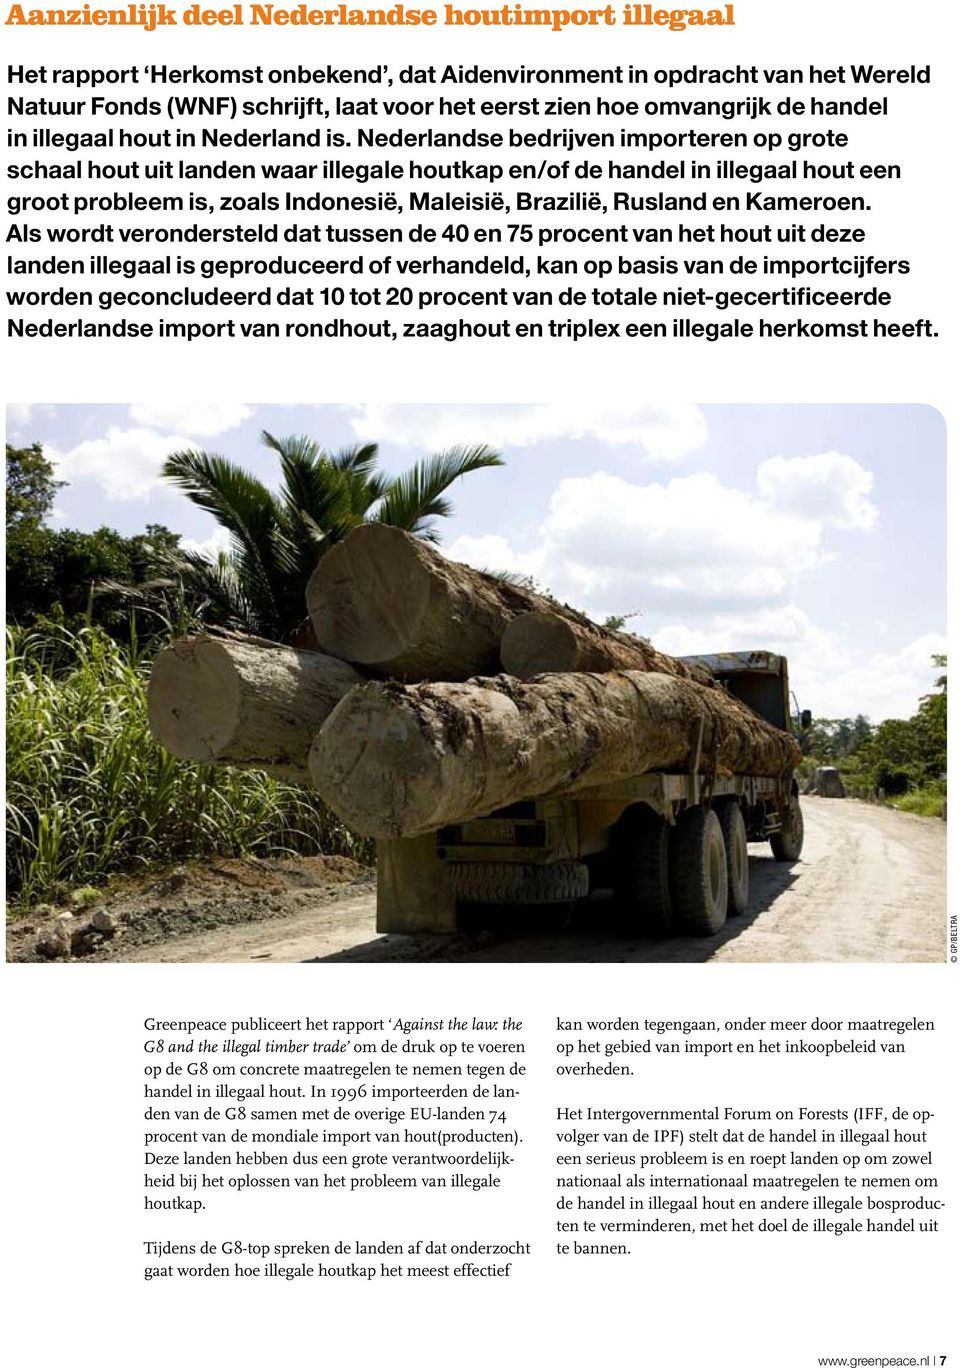 Nederlandse bedrijven importeren op grote schaal hout uit landen waar illegale houtkap en/of de handel in illegaal hout een groot probleem is, zoals Indonesië, Maleisië, Brazilië, Rusland en Kameroen.